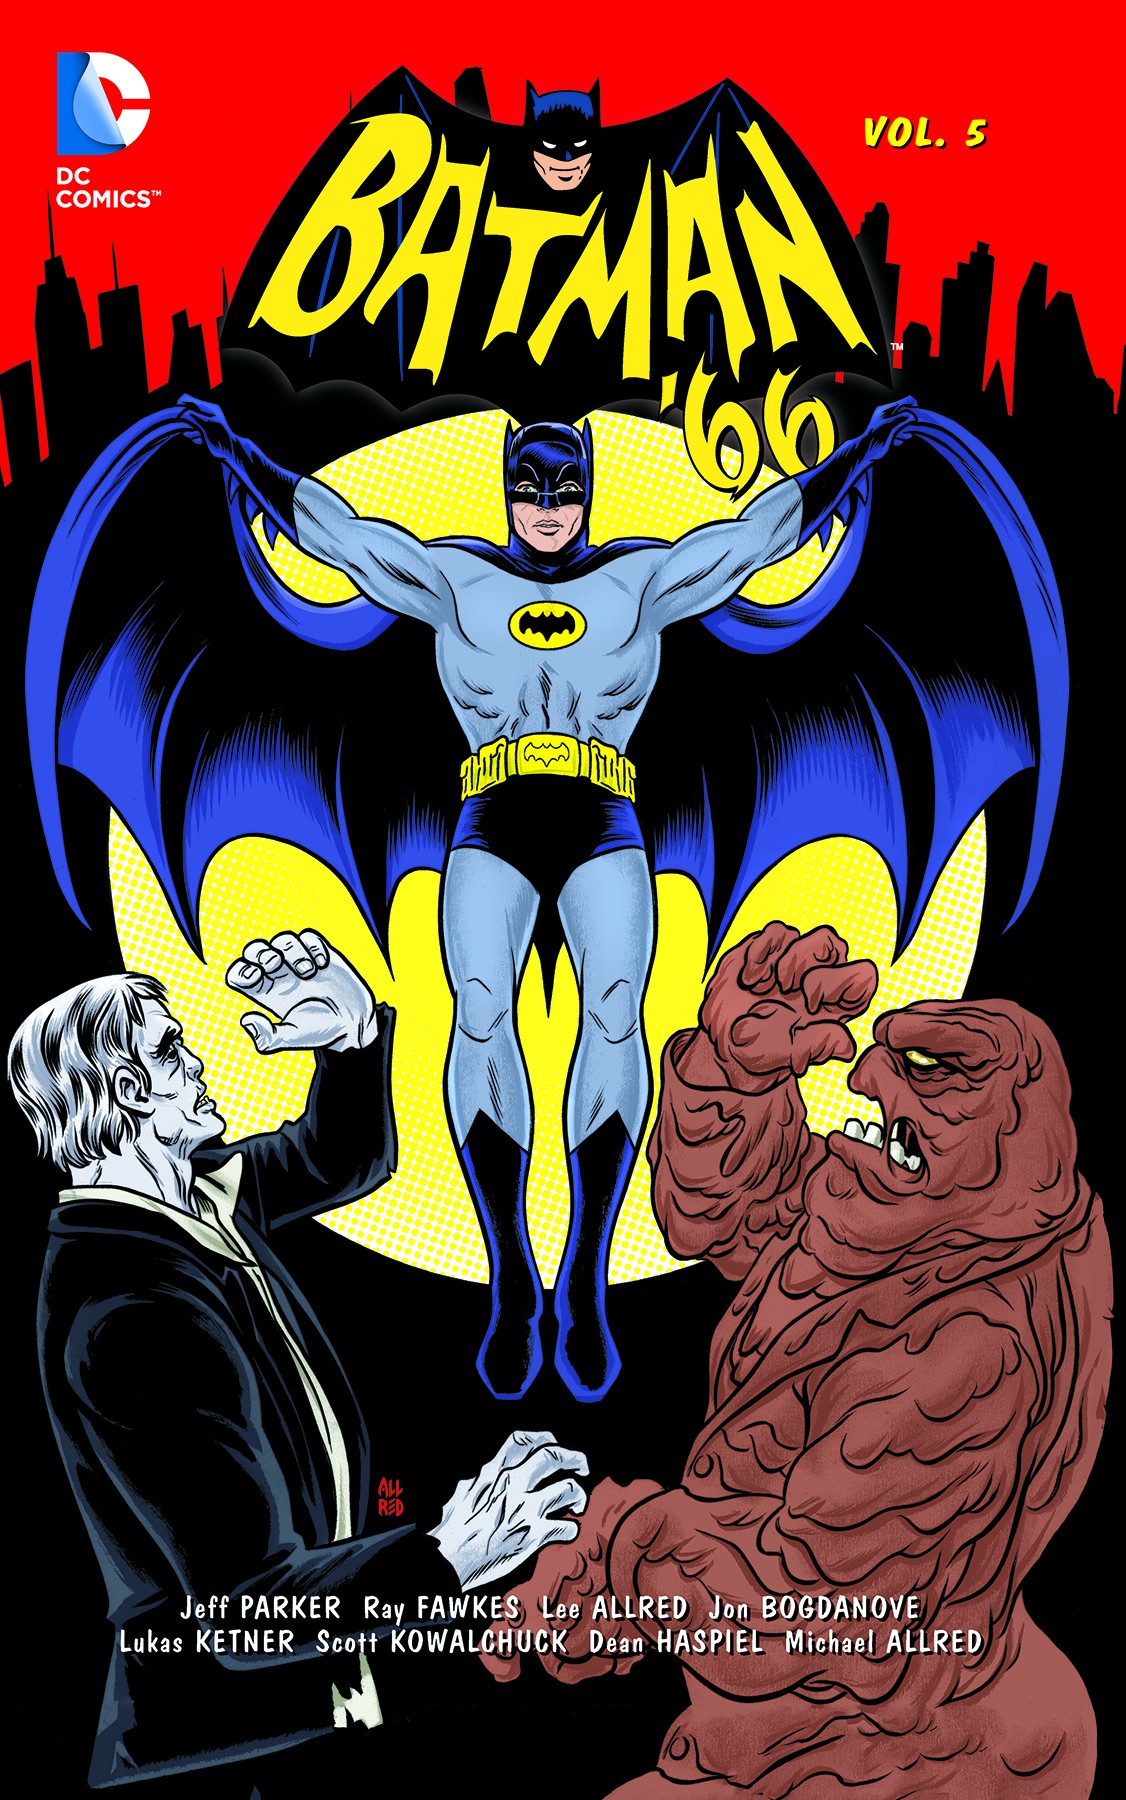 BATMAN 66 TP VOLUME 5 | Graphic Novels | Reed Comics